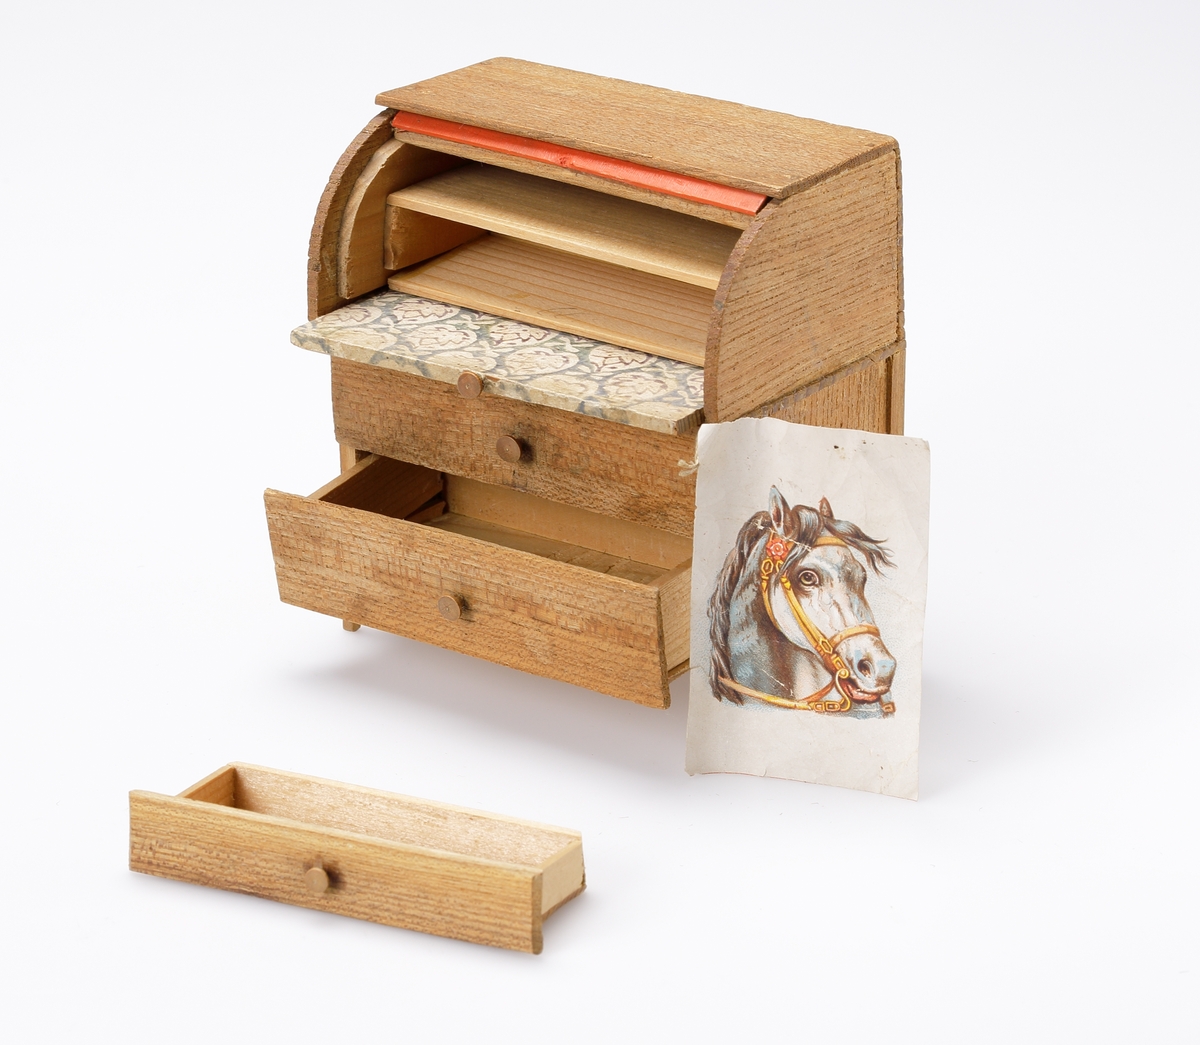 Chiffonjé (dockmöbel) av brunt trä, med två lådor och uppfällbar (rull-)klaff. Bakom klaffen en låda och en hylla. Klaffen klädd med stormönstrat papper. I en låda ligger det ett bokmärke.